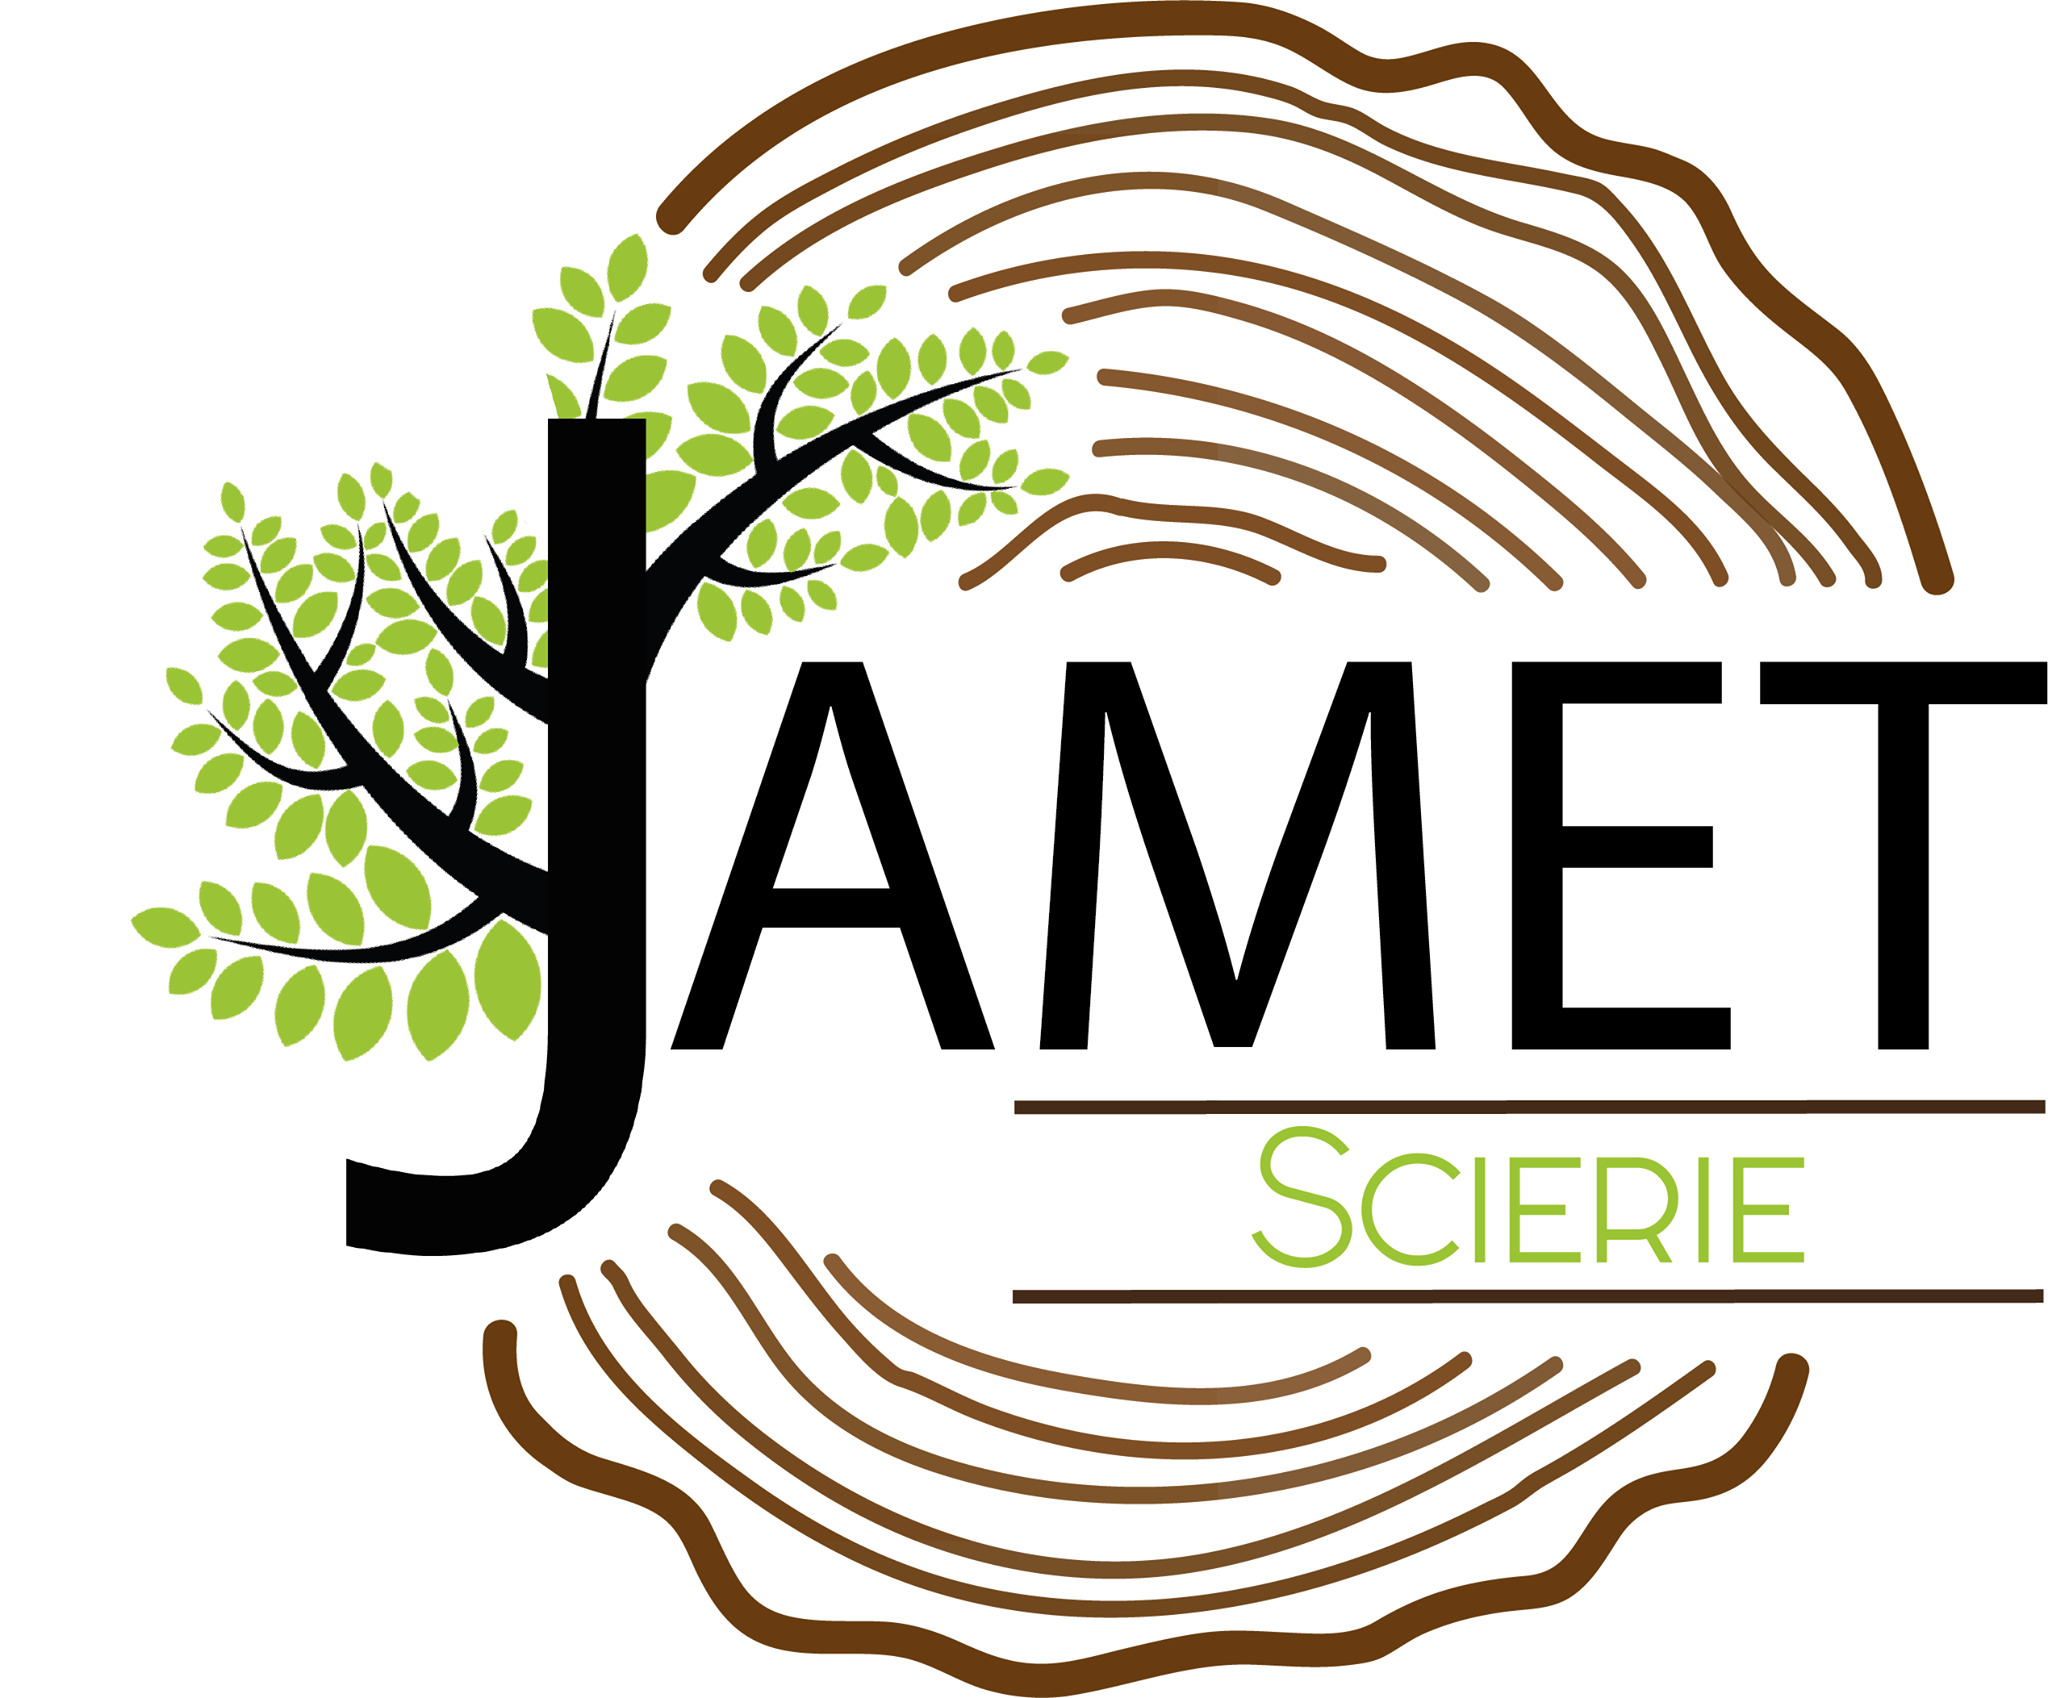 Logo - SCIERIE JAMET